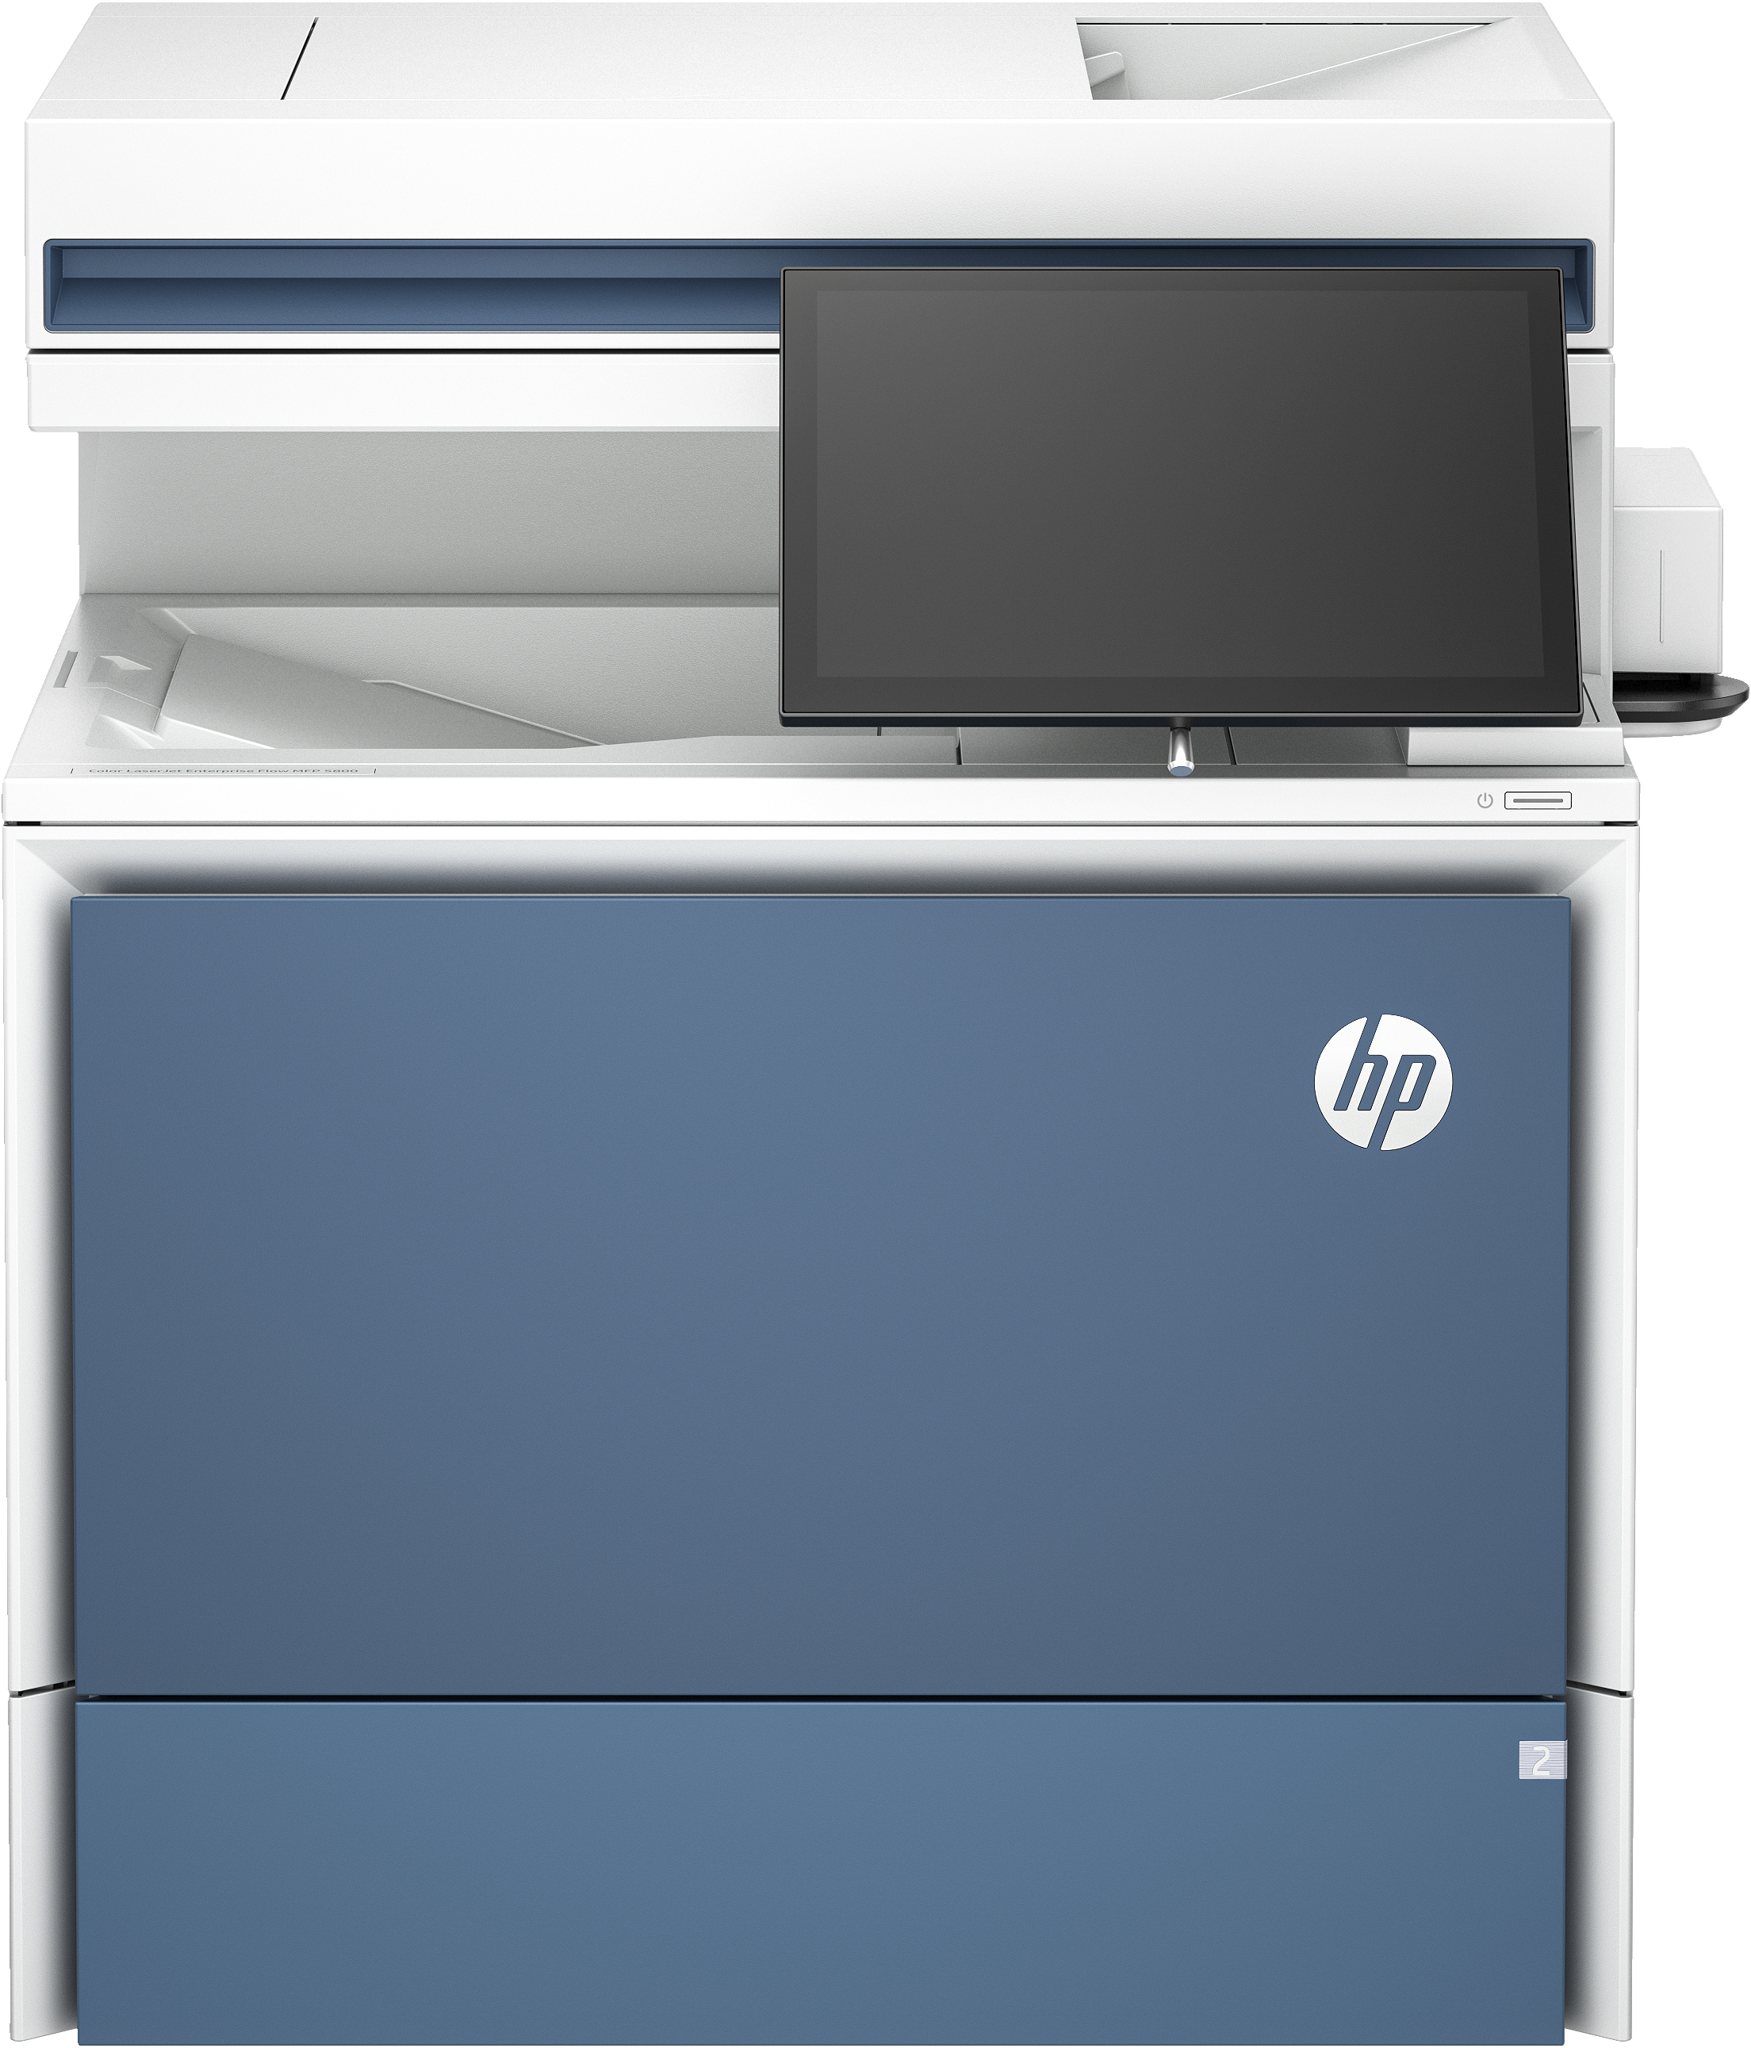 Bild von HP Color LaserJet Enterprise Flow MFP 5800zf Drucker - Drucken - Kopieren - Scannen - Faxen - Automatische Dokumentenzuführung; Optionale Fächer mit hoher Kapazität; Touchscreen; Tonerkartusche mit TerraJet - Laser - Farbdruck - 1200 x 1200 DPI - A4 - Direkt